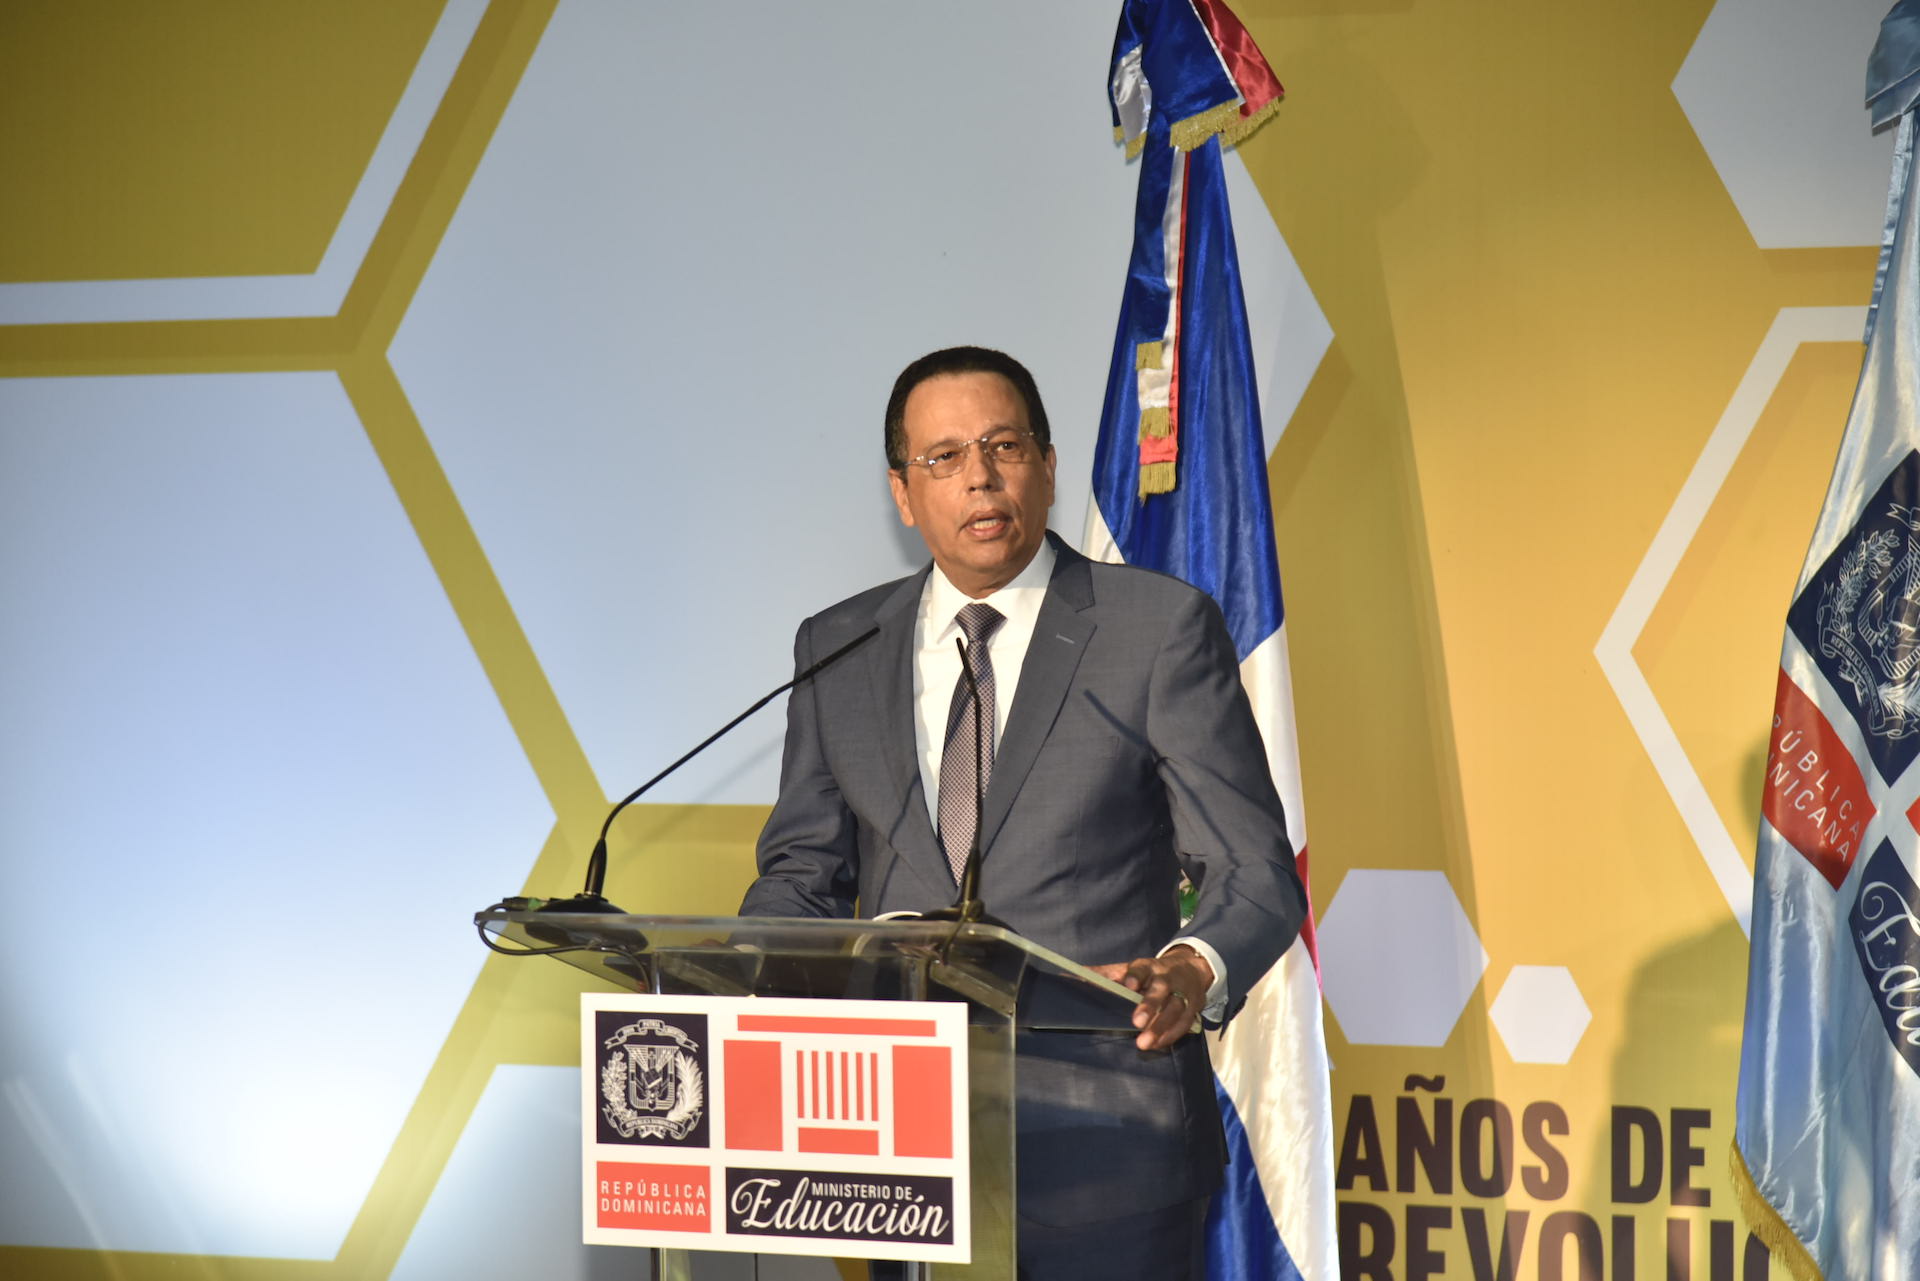 Antonio Peña Mirabal: “La historia deberá reconocer a Danilo Medina como el presidente de la educación dominicana”